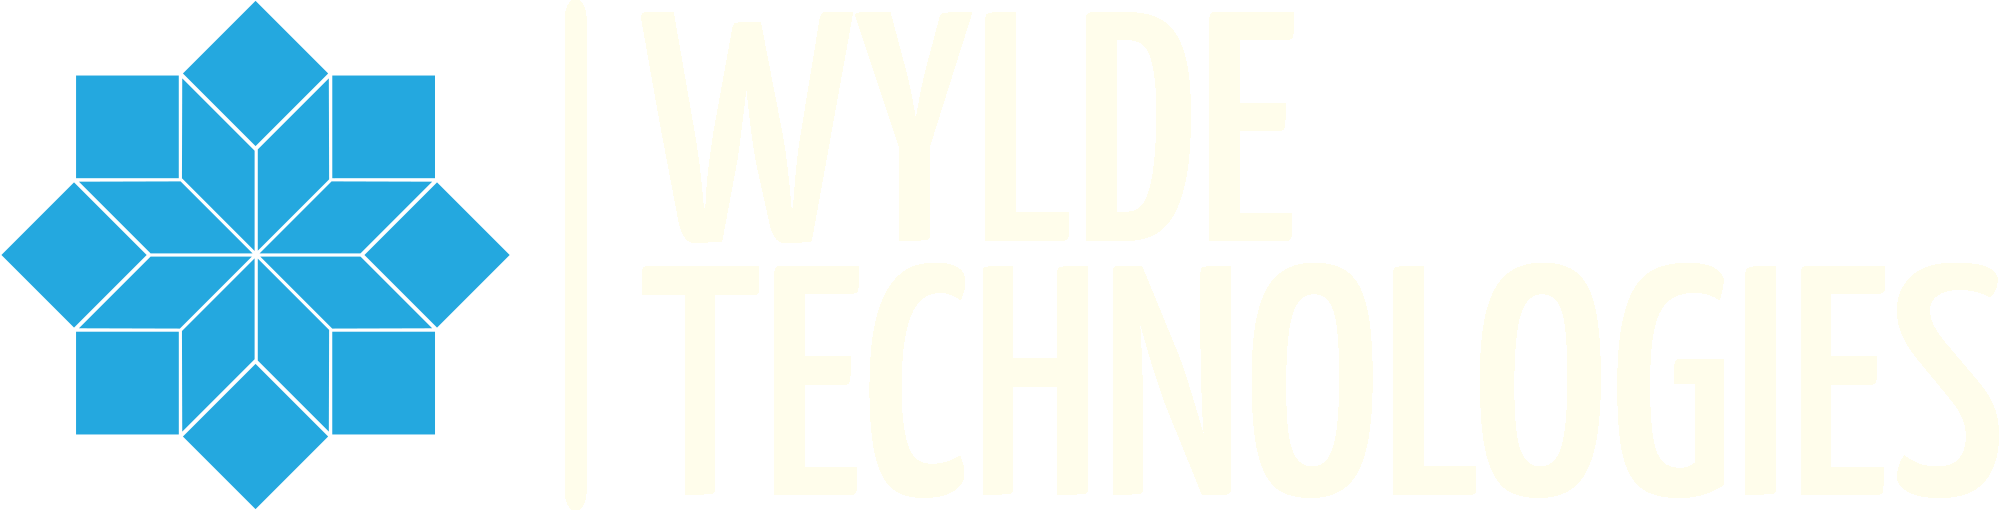 Wylde Technologies